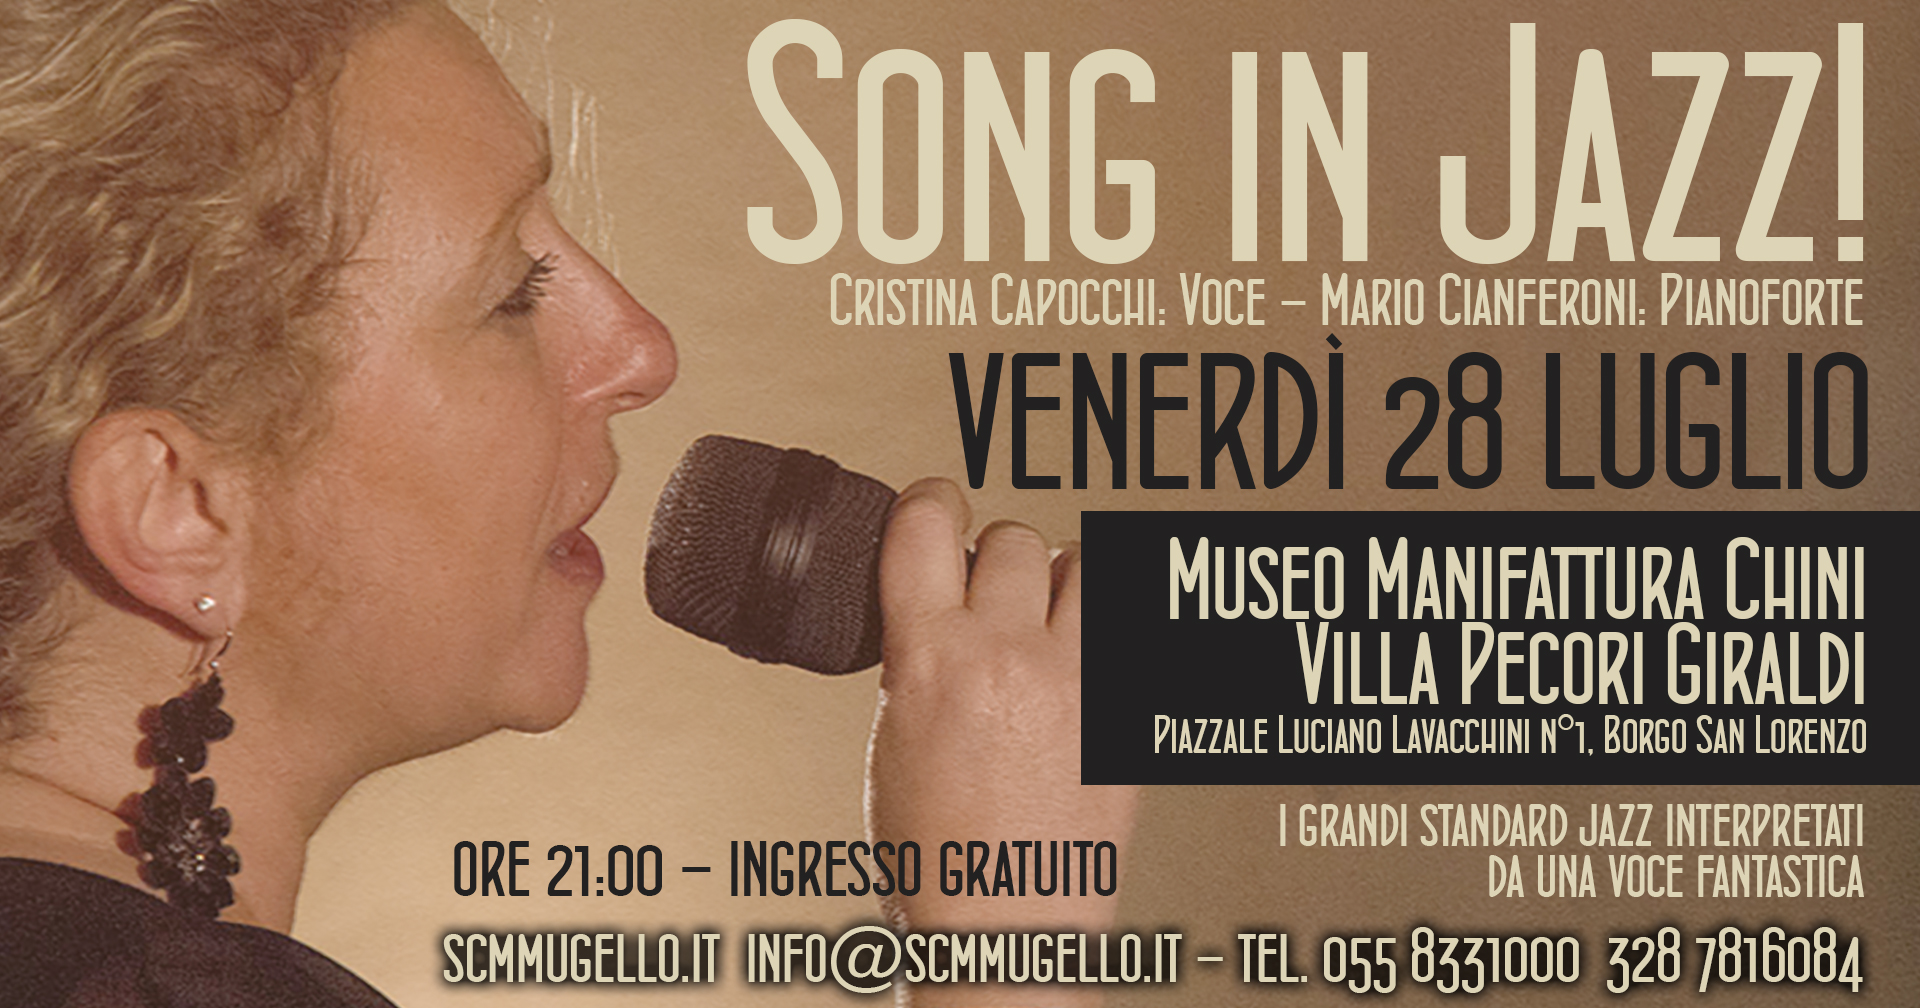 Song in Jazz! Museo Manifattura Chini Villa Pecori Giraldi Borgo San Lorenzo Venerdì 28 Luglio ore 21